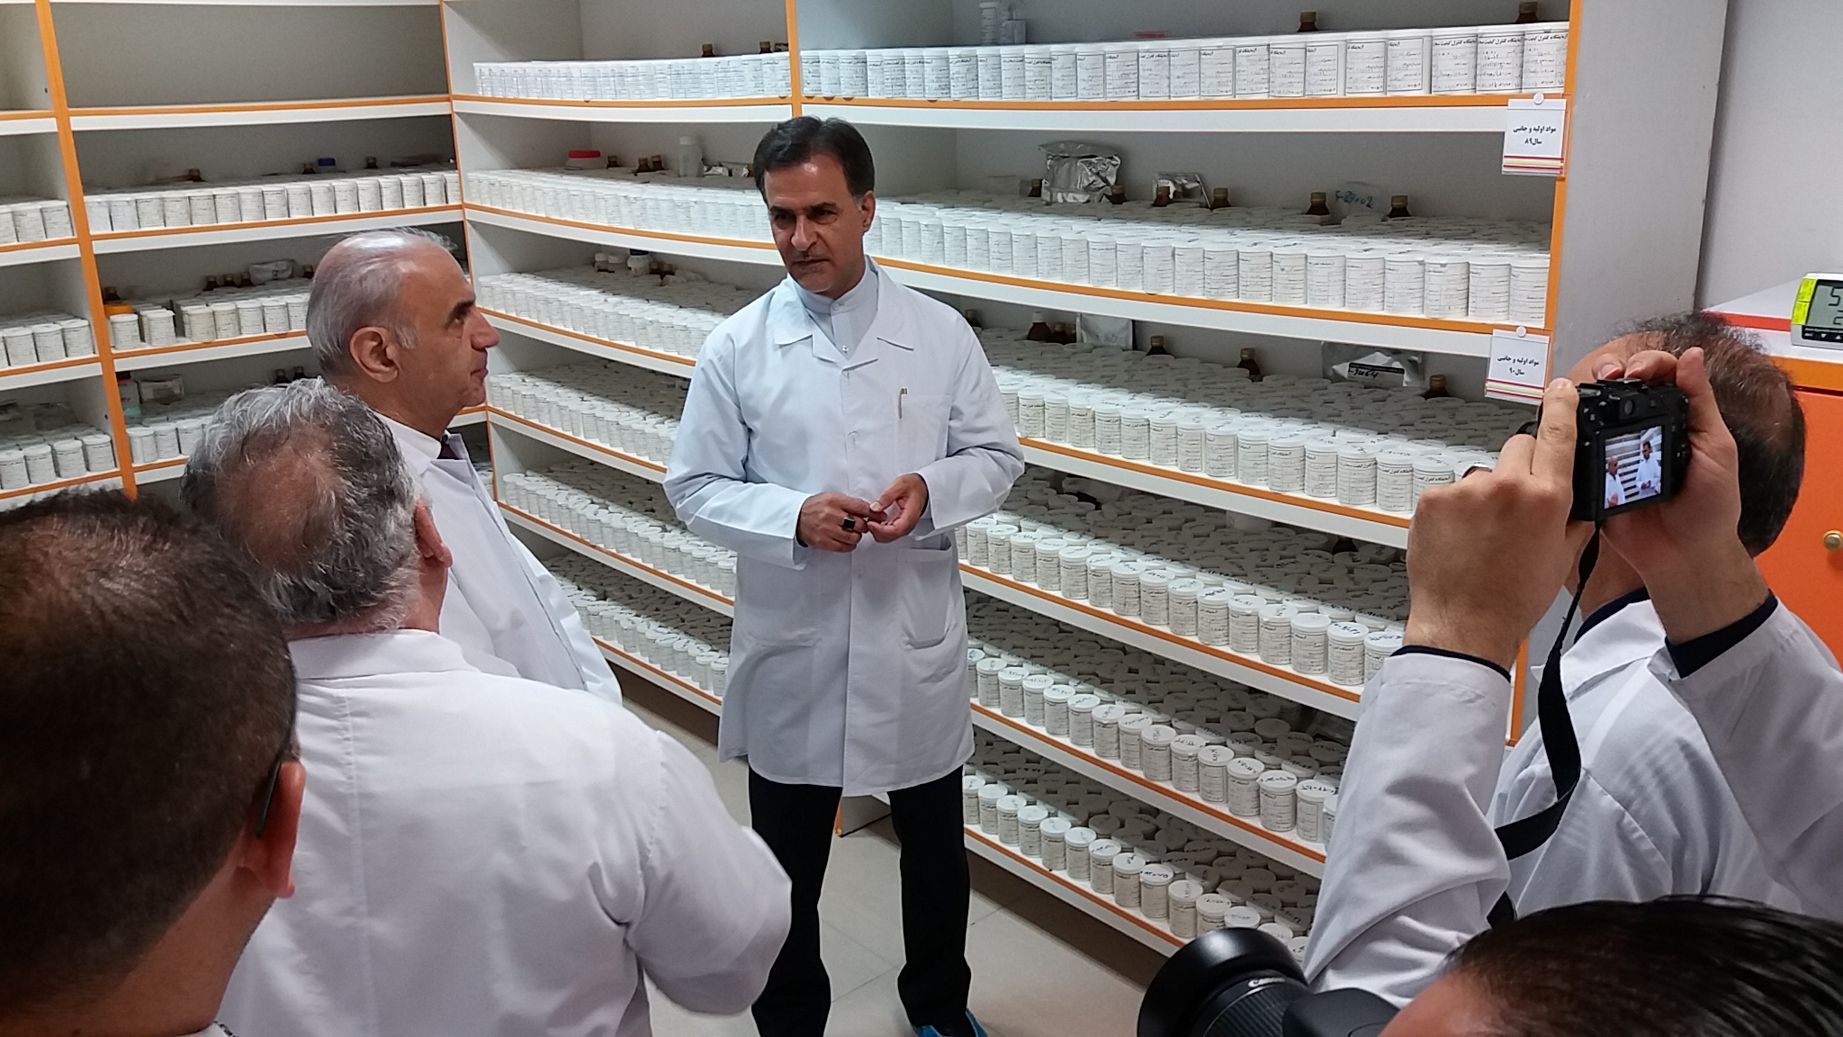 واردات فرآورده های دارویی از ایران  برای مصرف کنندگان  کشورهای عضو اتحادیه اقتصادی اورآسیا می تواند بسیار مقرون به صرفه باشد+ گزارش تصویری